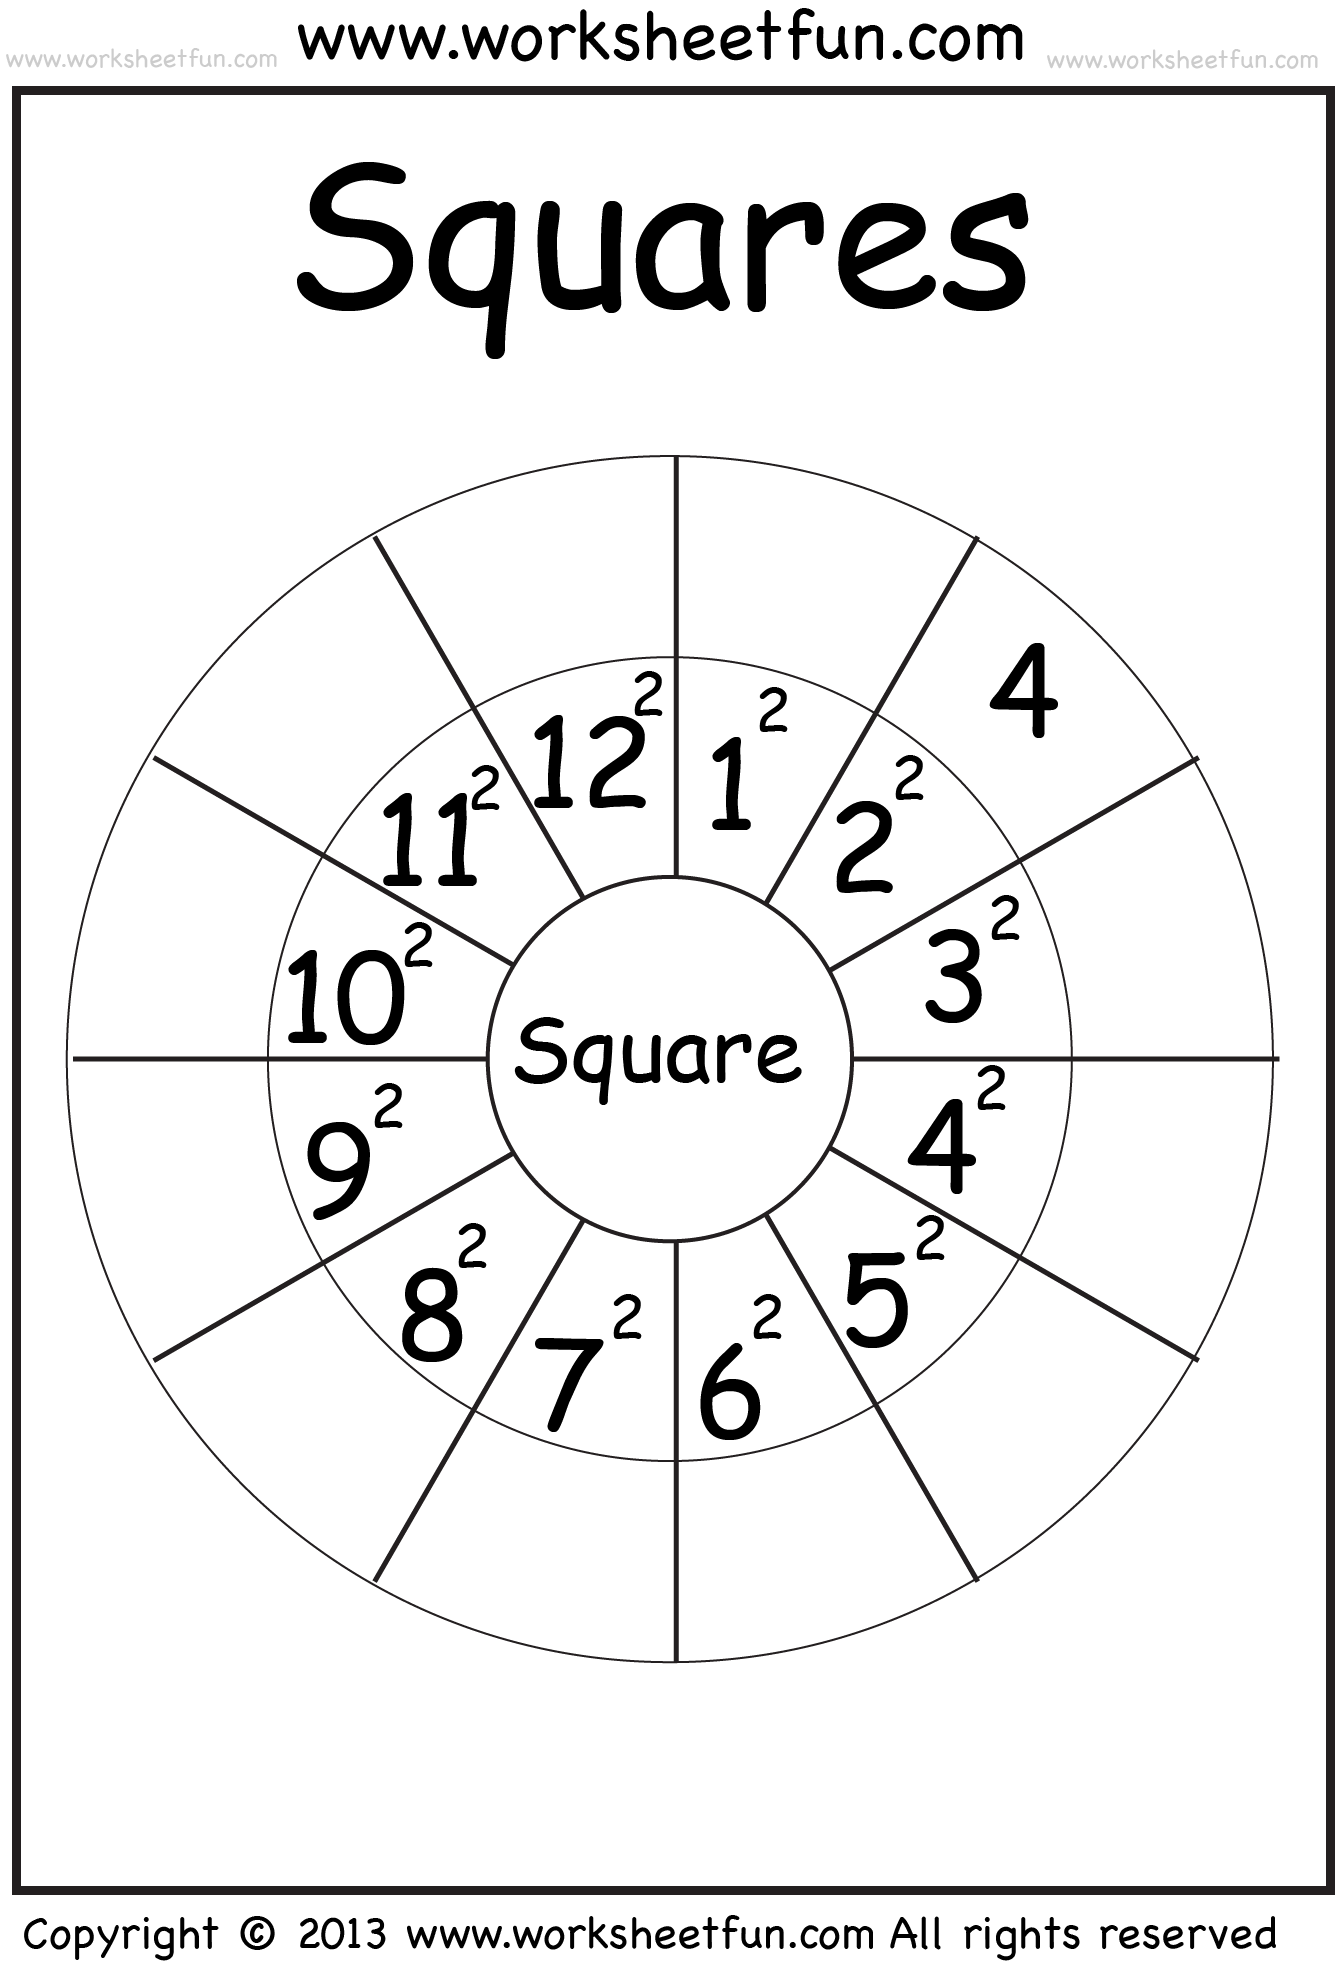 squares-1-12-worksheet-free-printable-worksheets-worksheetfun